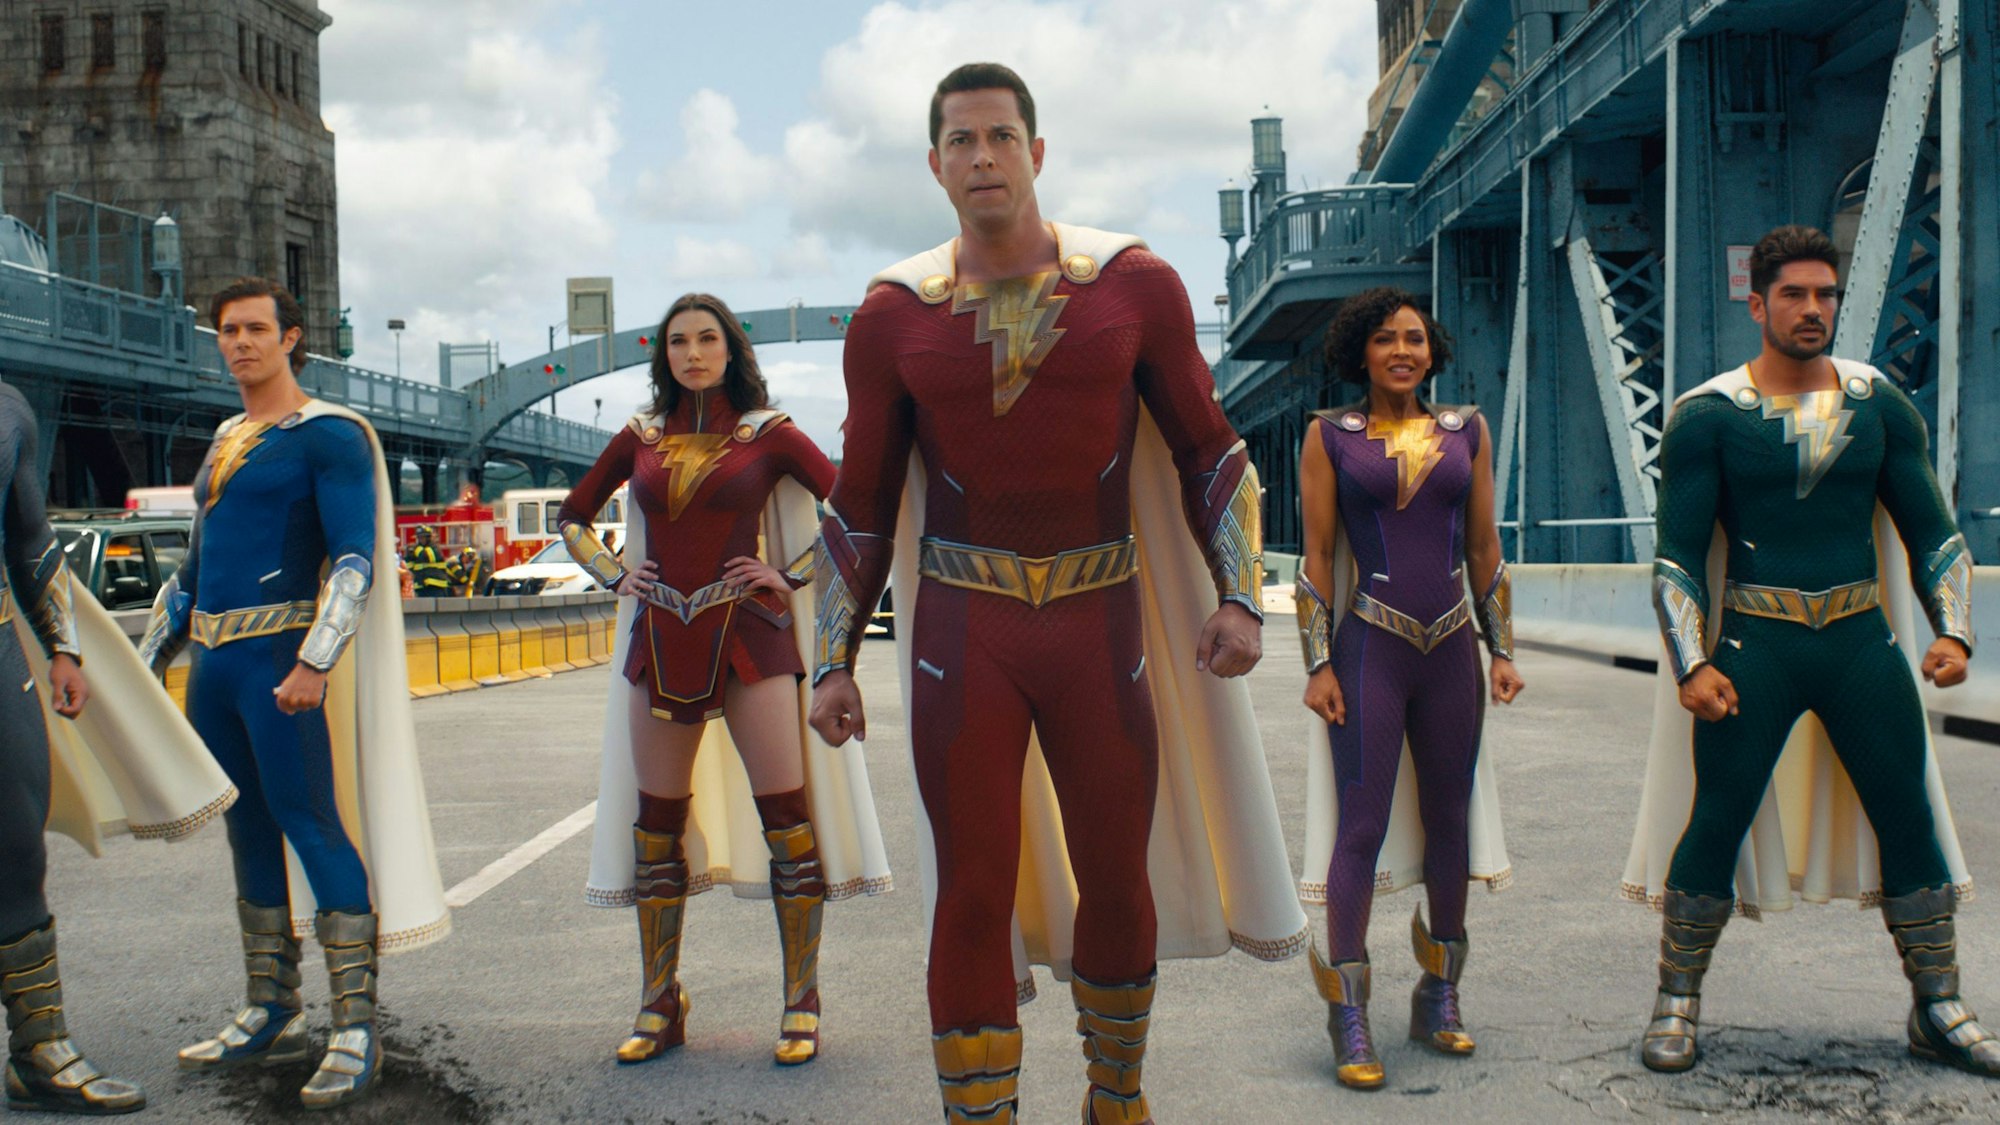 Die Superhelden stehen in einer Reihe, in der Mitte Zachary Levy als Billy. Er trägt ein rotes Kostüm mit einem gelben Blitz auf der Brust.